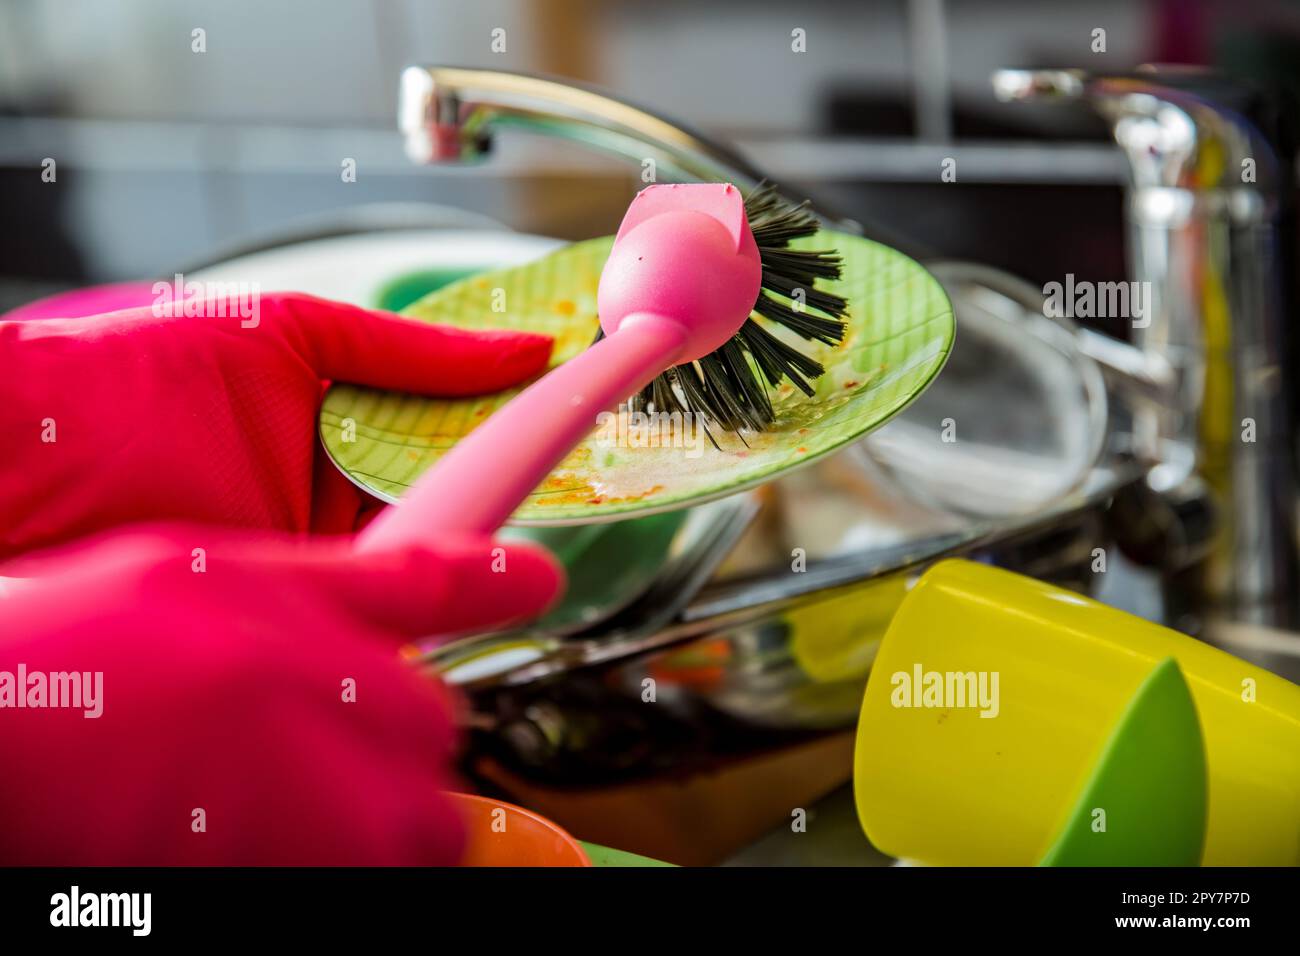 Évier de cuisine plein de vaisselle sale. Femme en gants de caoutchouc rose faisant la vaisselle, en utilisant la brosse. Comptoir de couleur sombre dans la cuisine moderne. Corvées de maison Banque D'Images